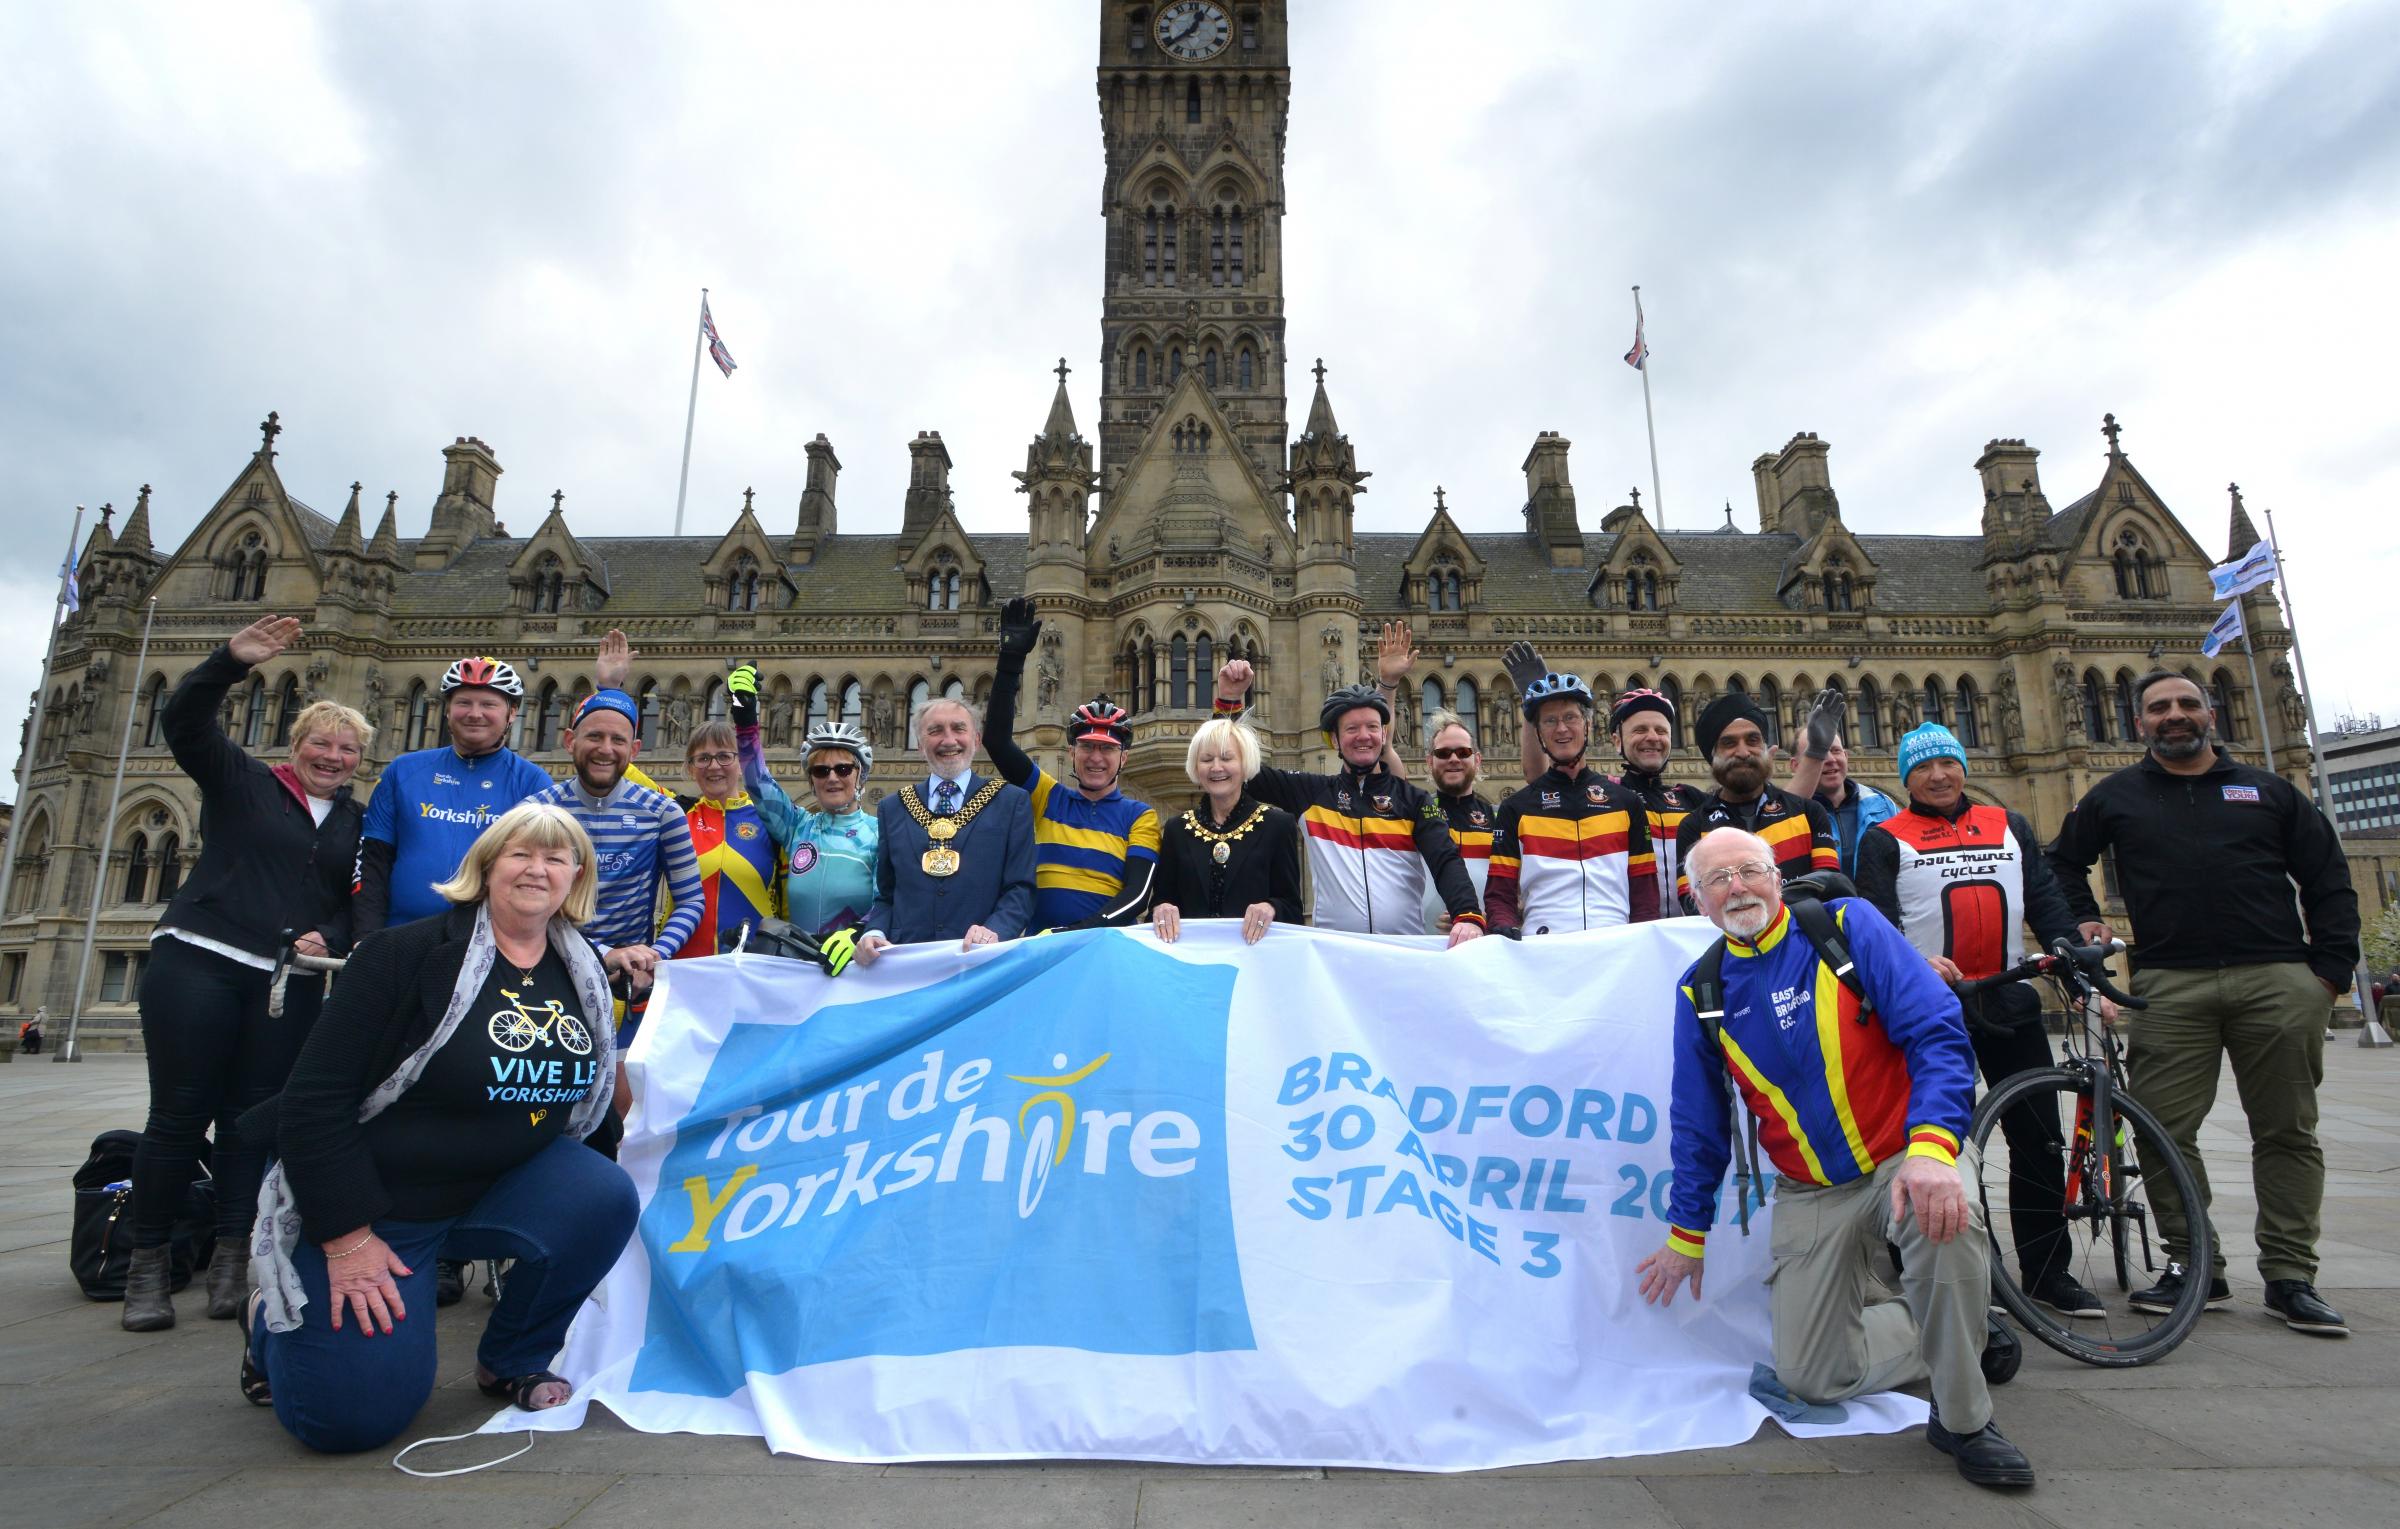 Tour de Yorkshire flag arrives at City Hall